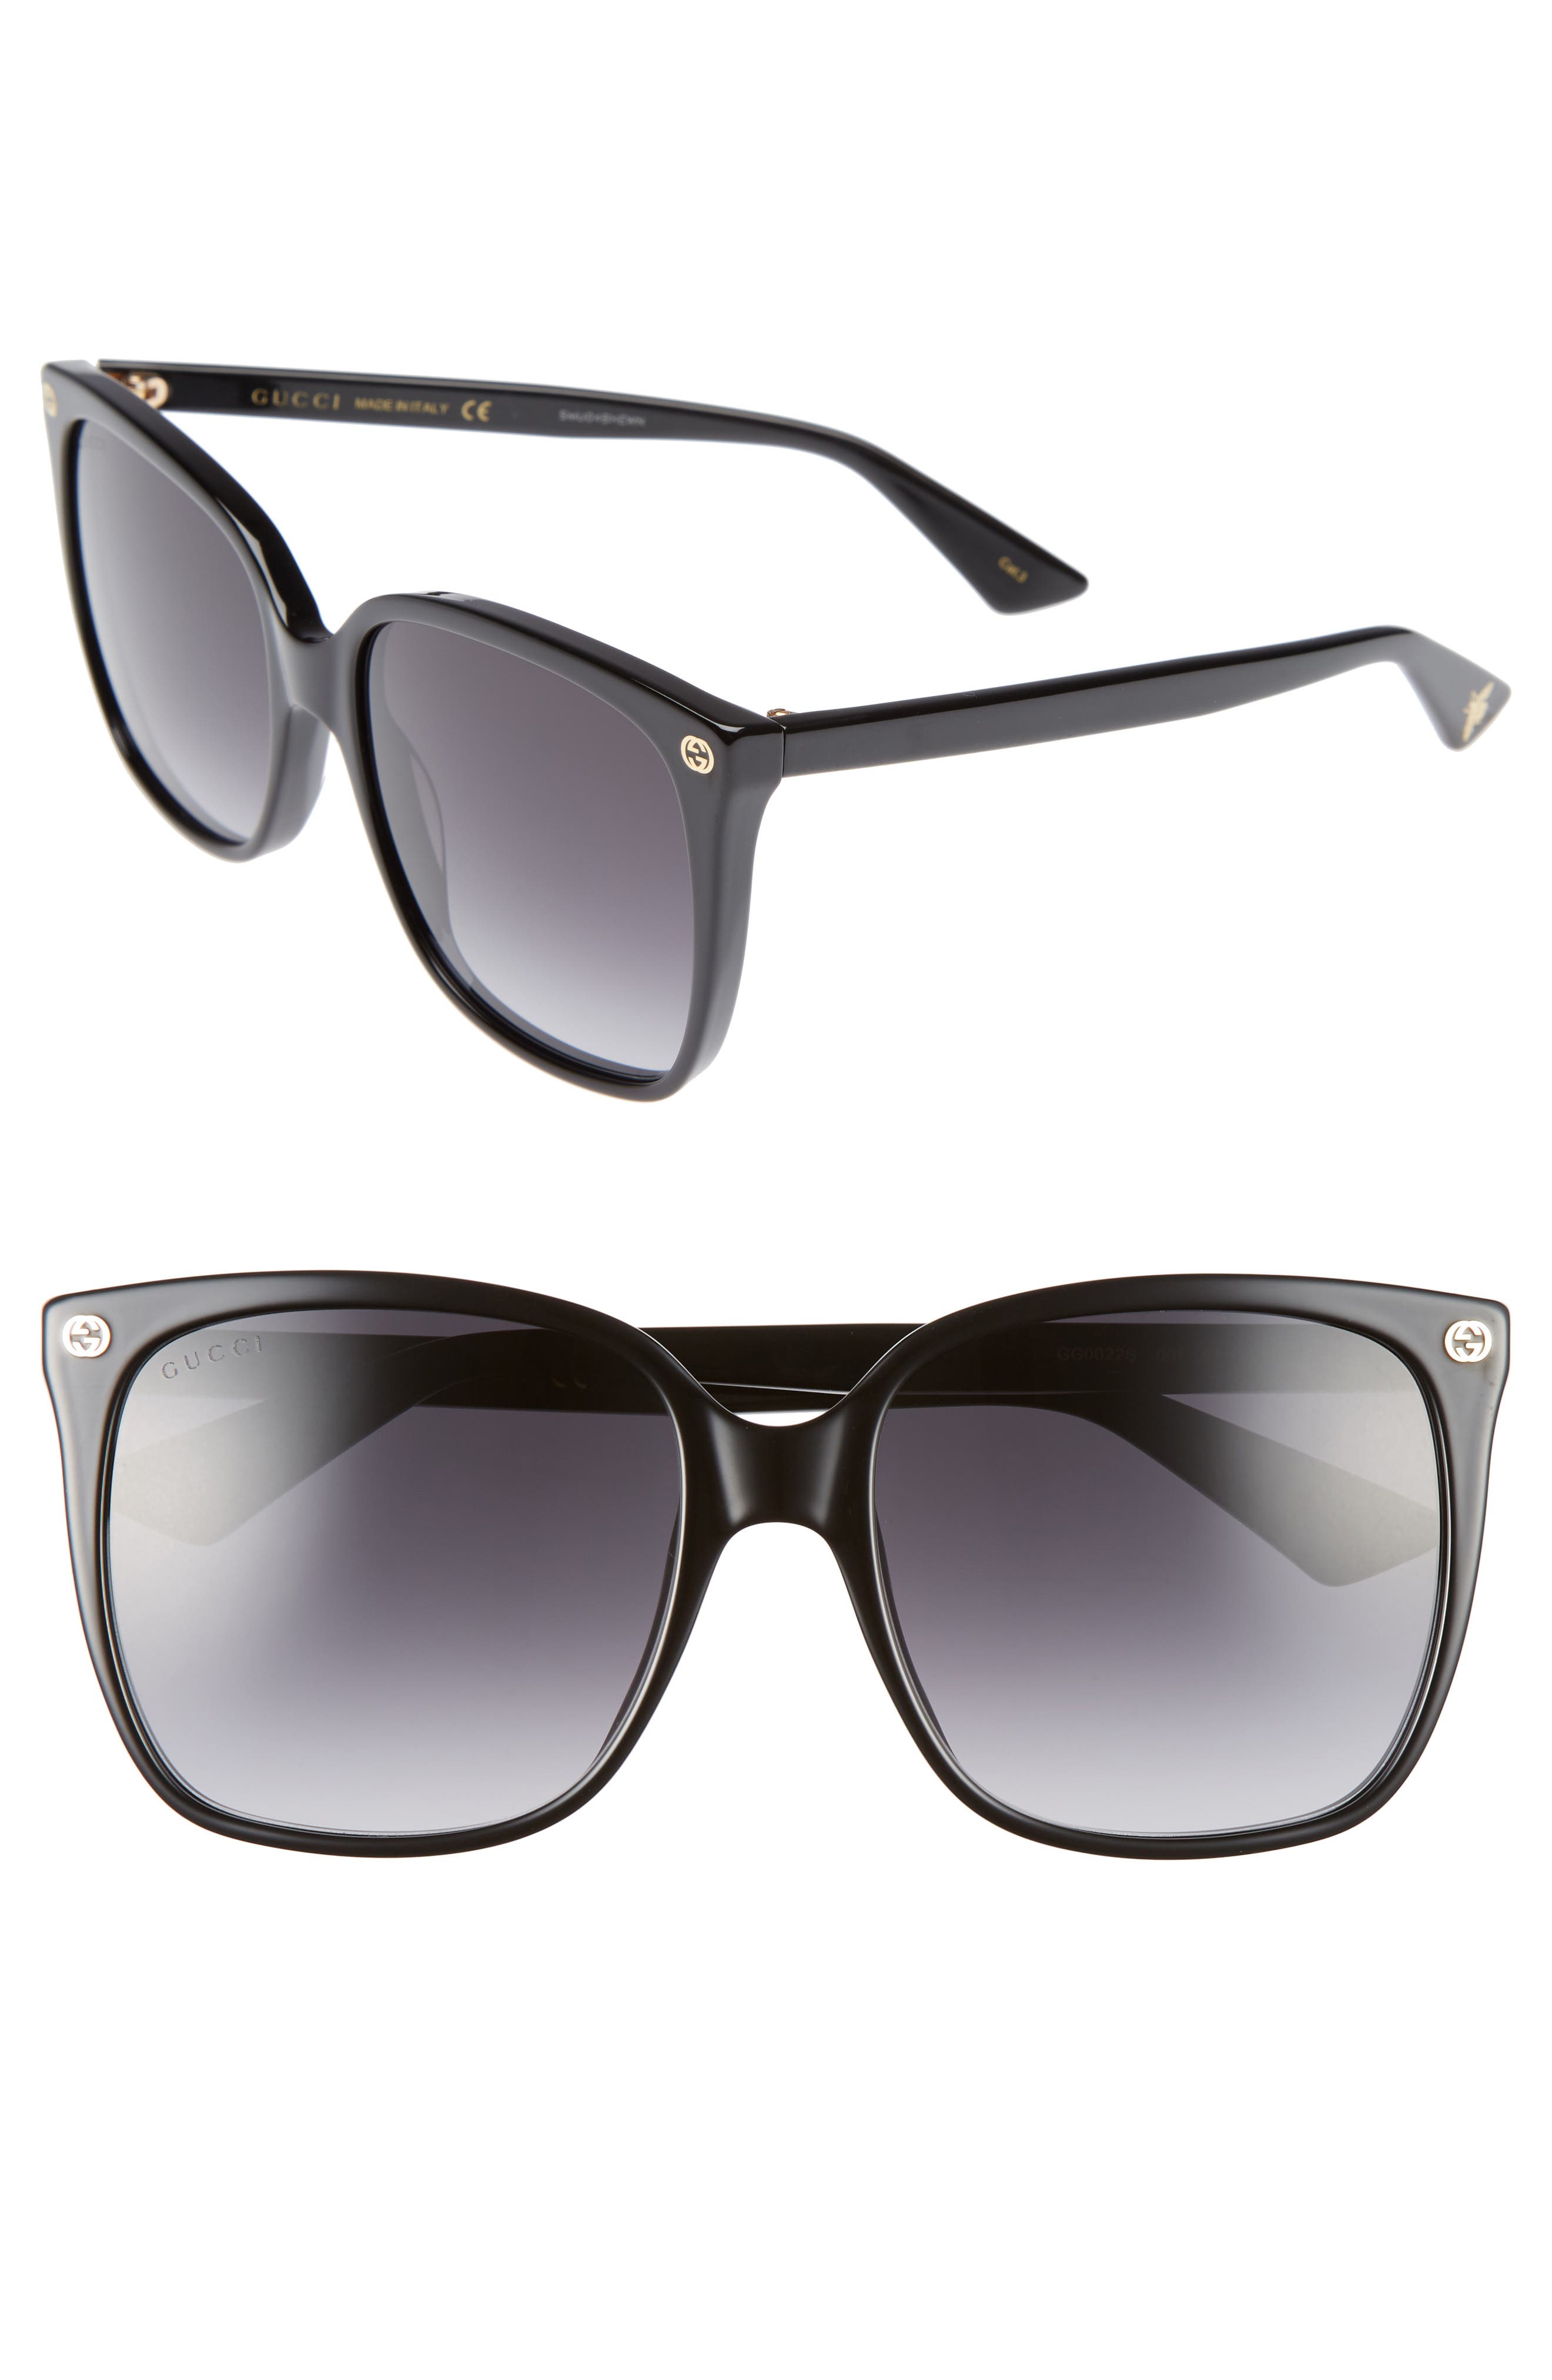 black gucci sunglasses womens